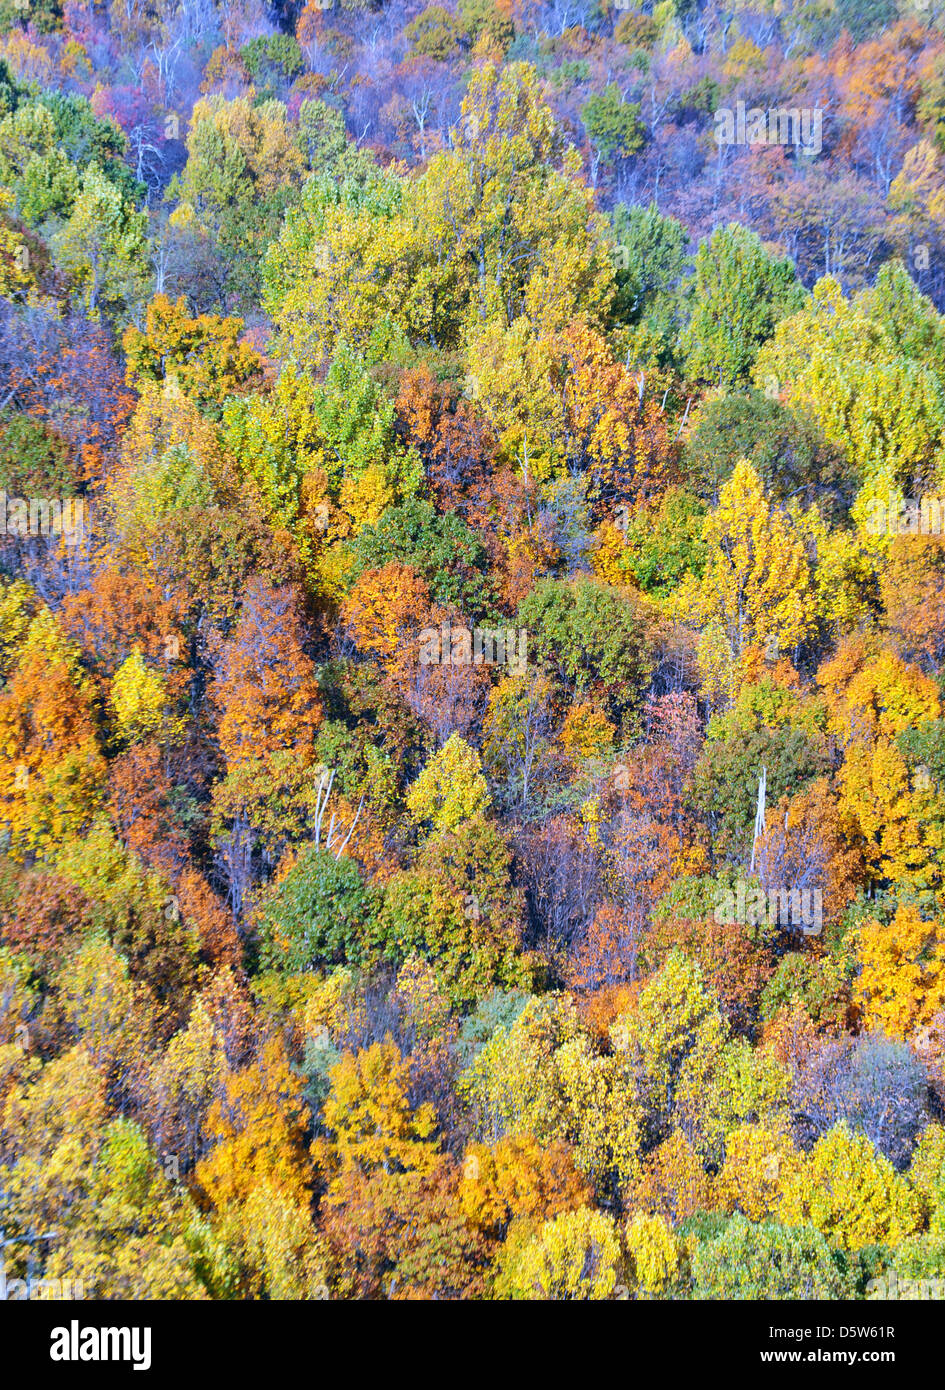 Les feuilles d'automne de beaucoup de couleurs dans Skyline Drive forêt, Shenandoah National Park, Blue Ridge Mountains Scenic Drive, couleurs d'automne Banque D'Images